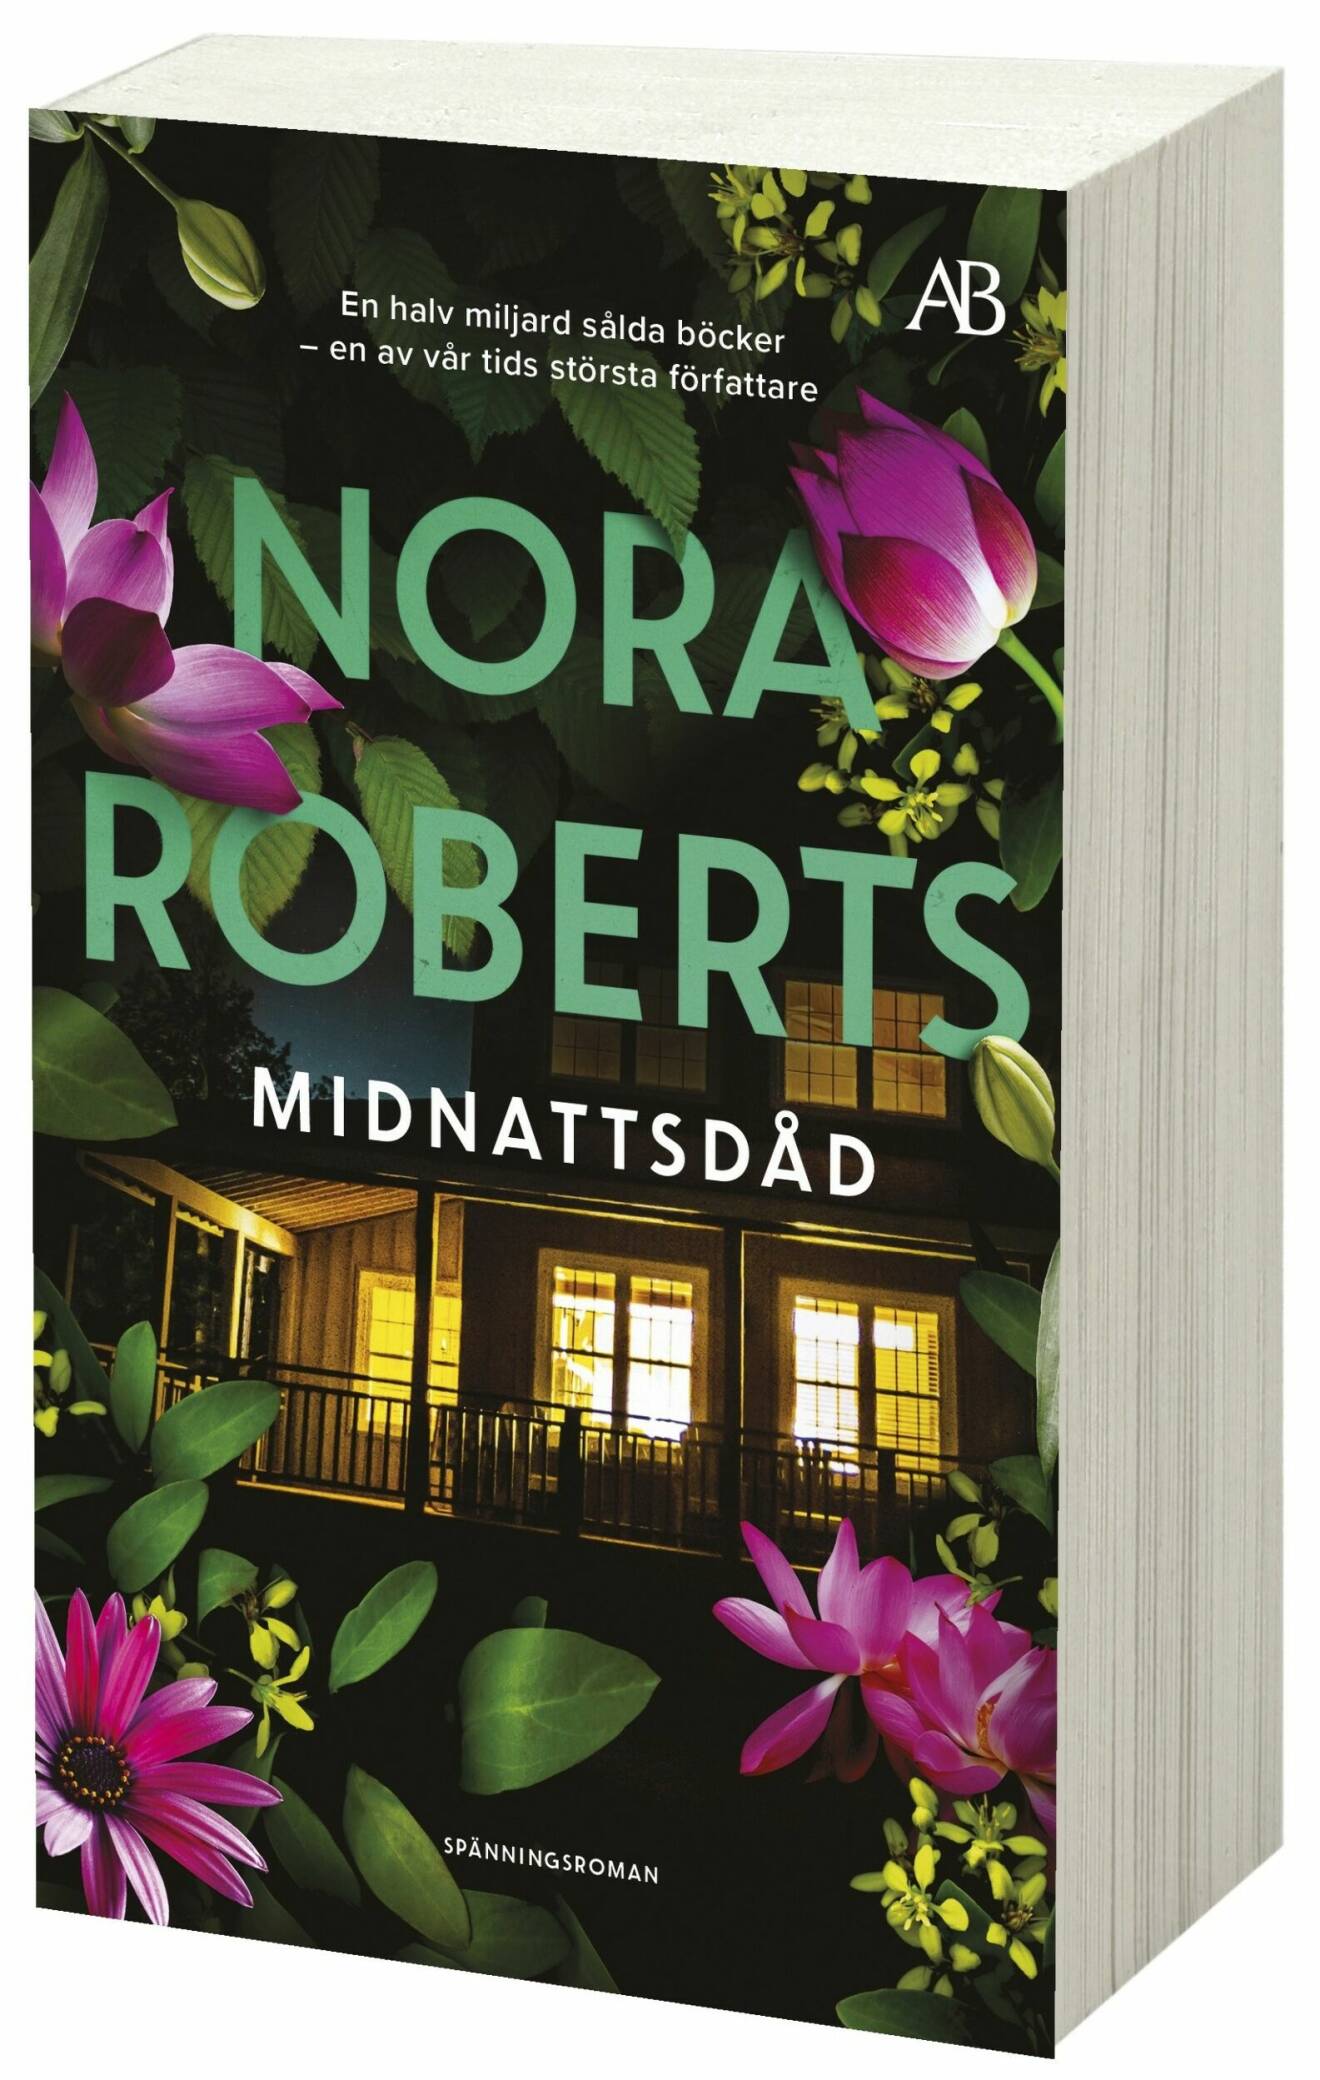 Midnattsdåd av Nora Roberts (Albert Bonniers förlag).